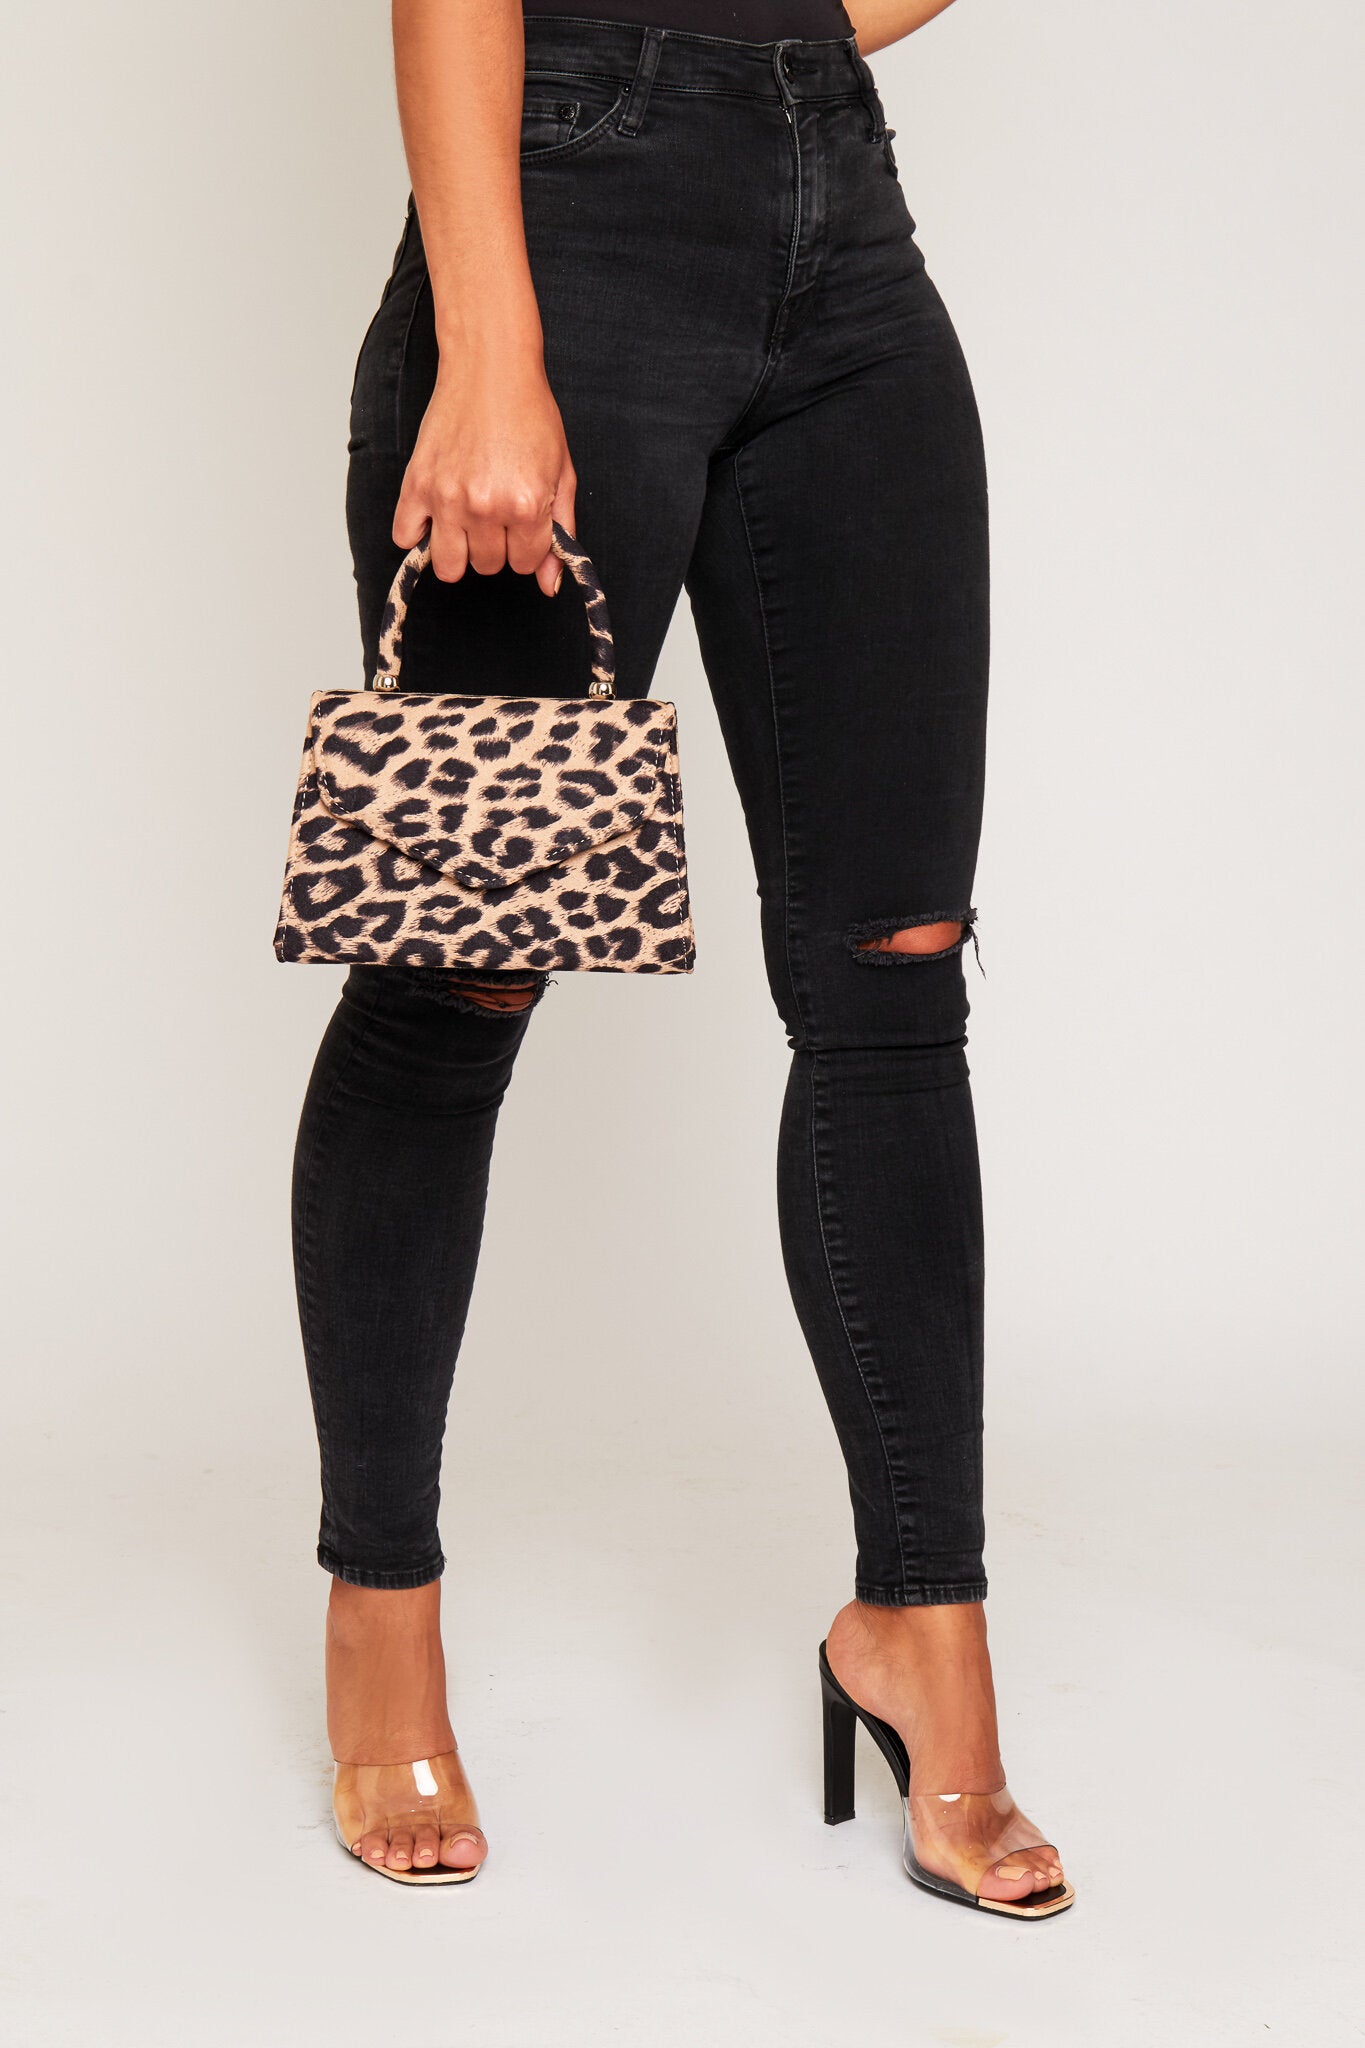 Lucine Grab Bag - Leopard